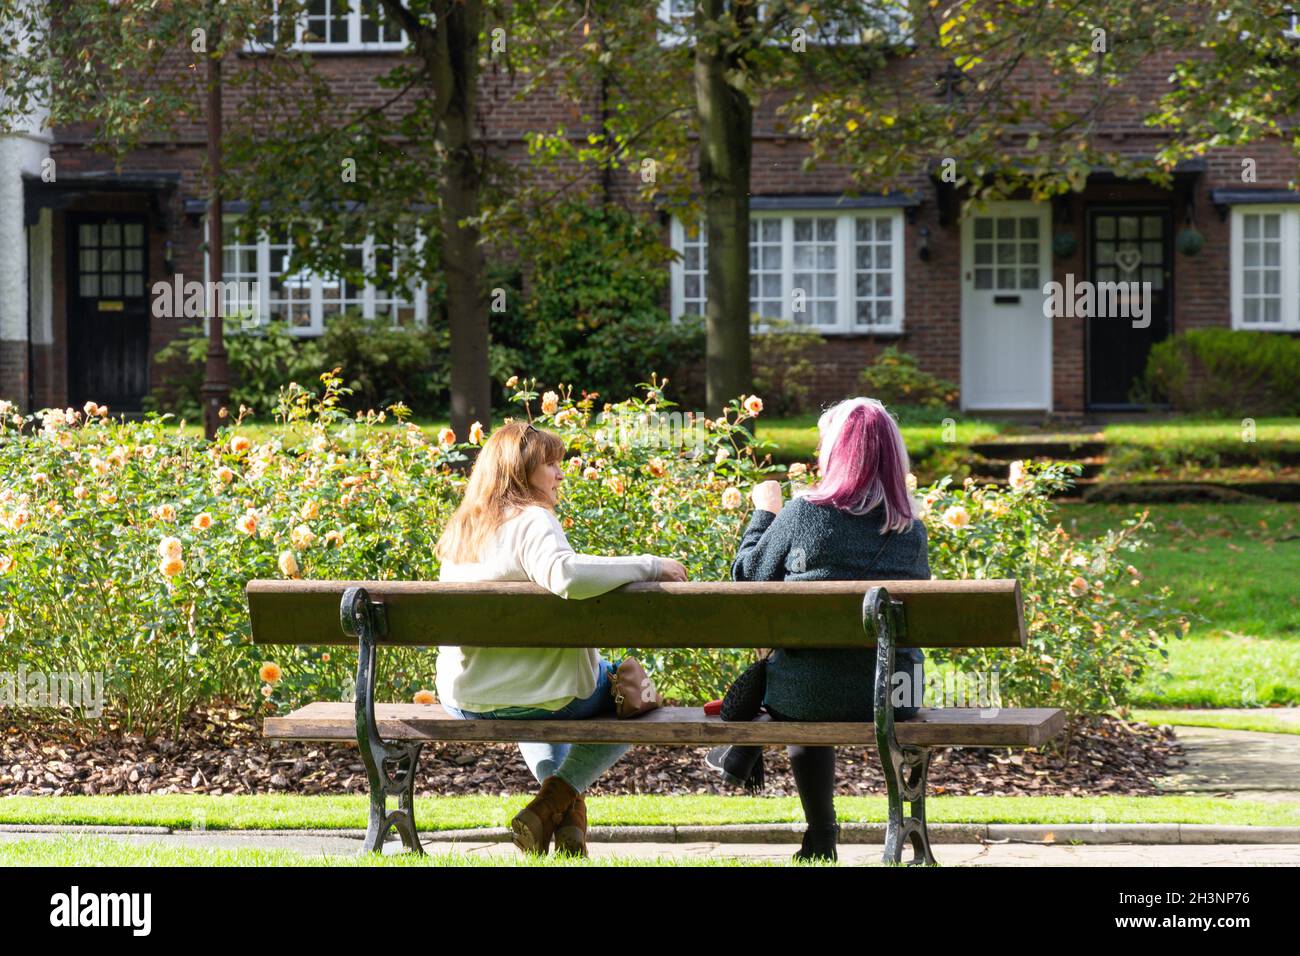 Jeunes femmes qui discutent dans les jardins de Port Sunlight, King George's Drive, Port Sunlight, Metropolitan Borough of Wirral, Merseyside, Angleterre, Royaume-Uni Banque D'Images